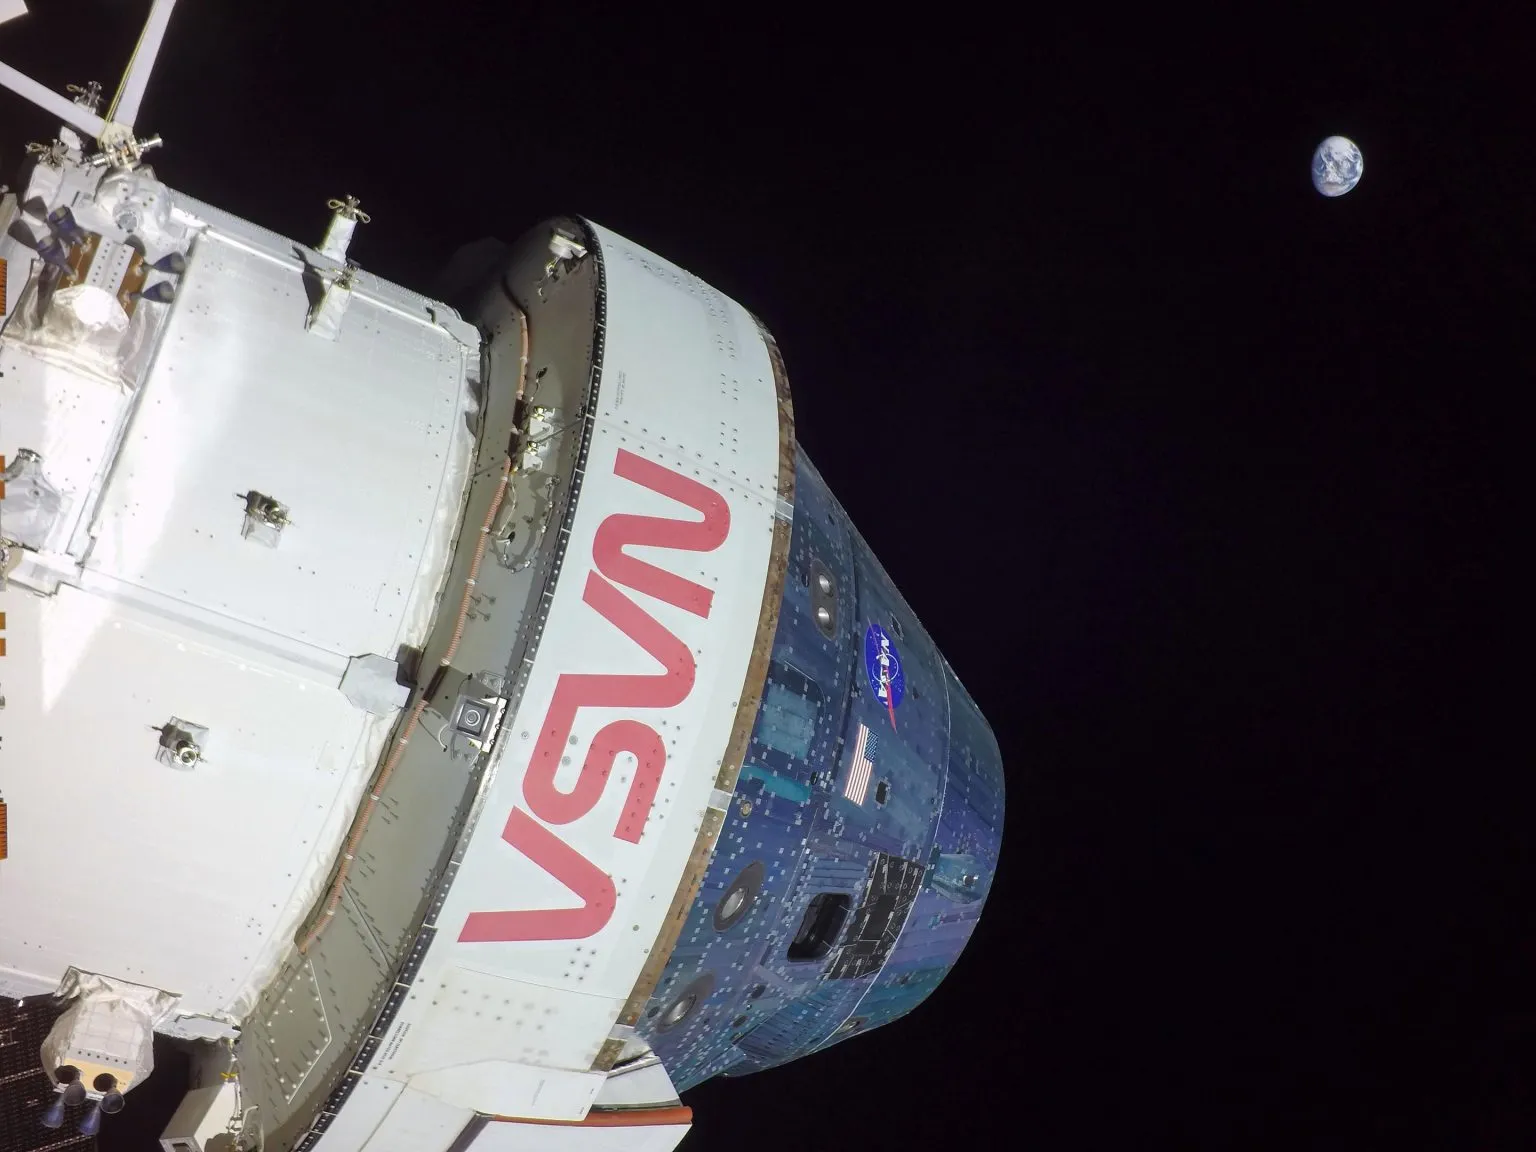 阿特米斯一号 - 猎户座飞船超越阿波罗13号的距离纪录